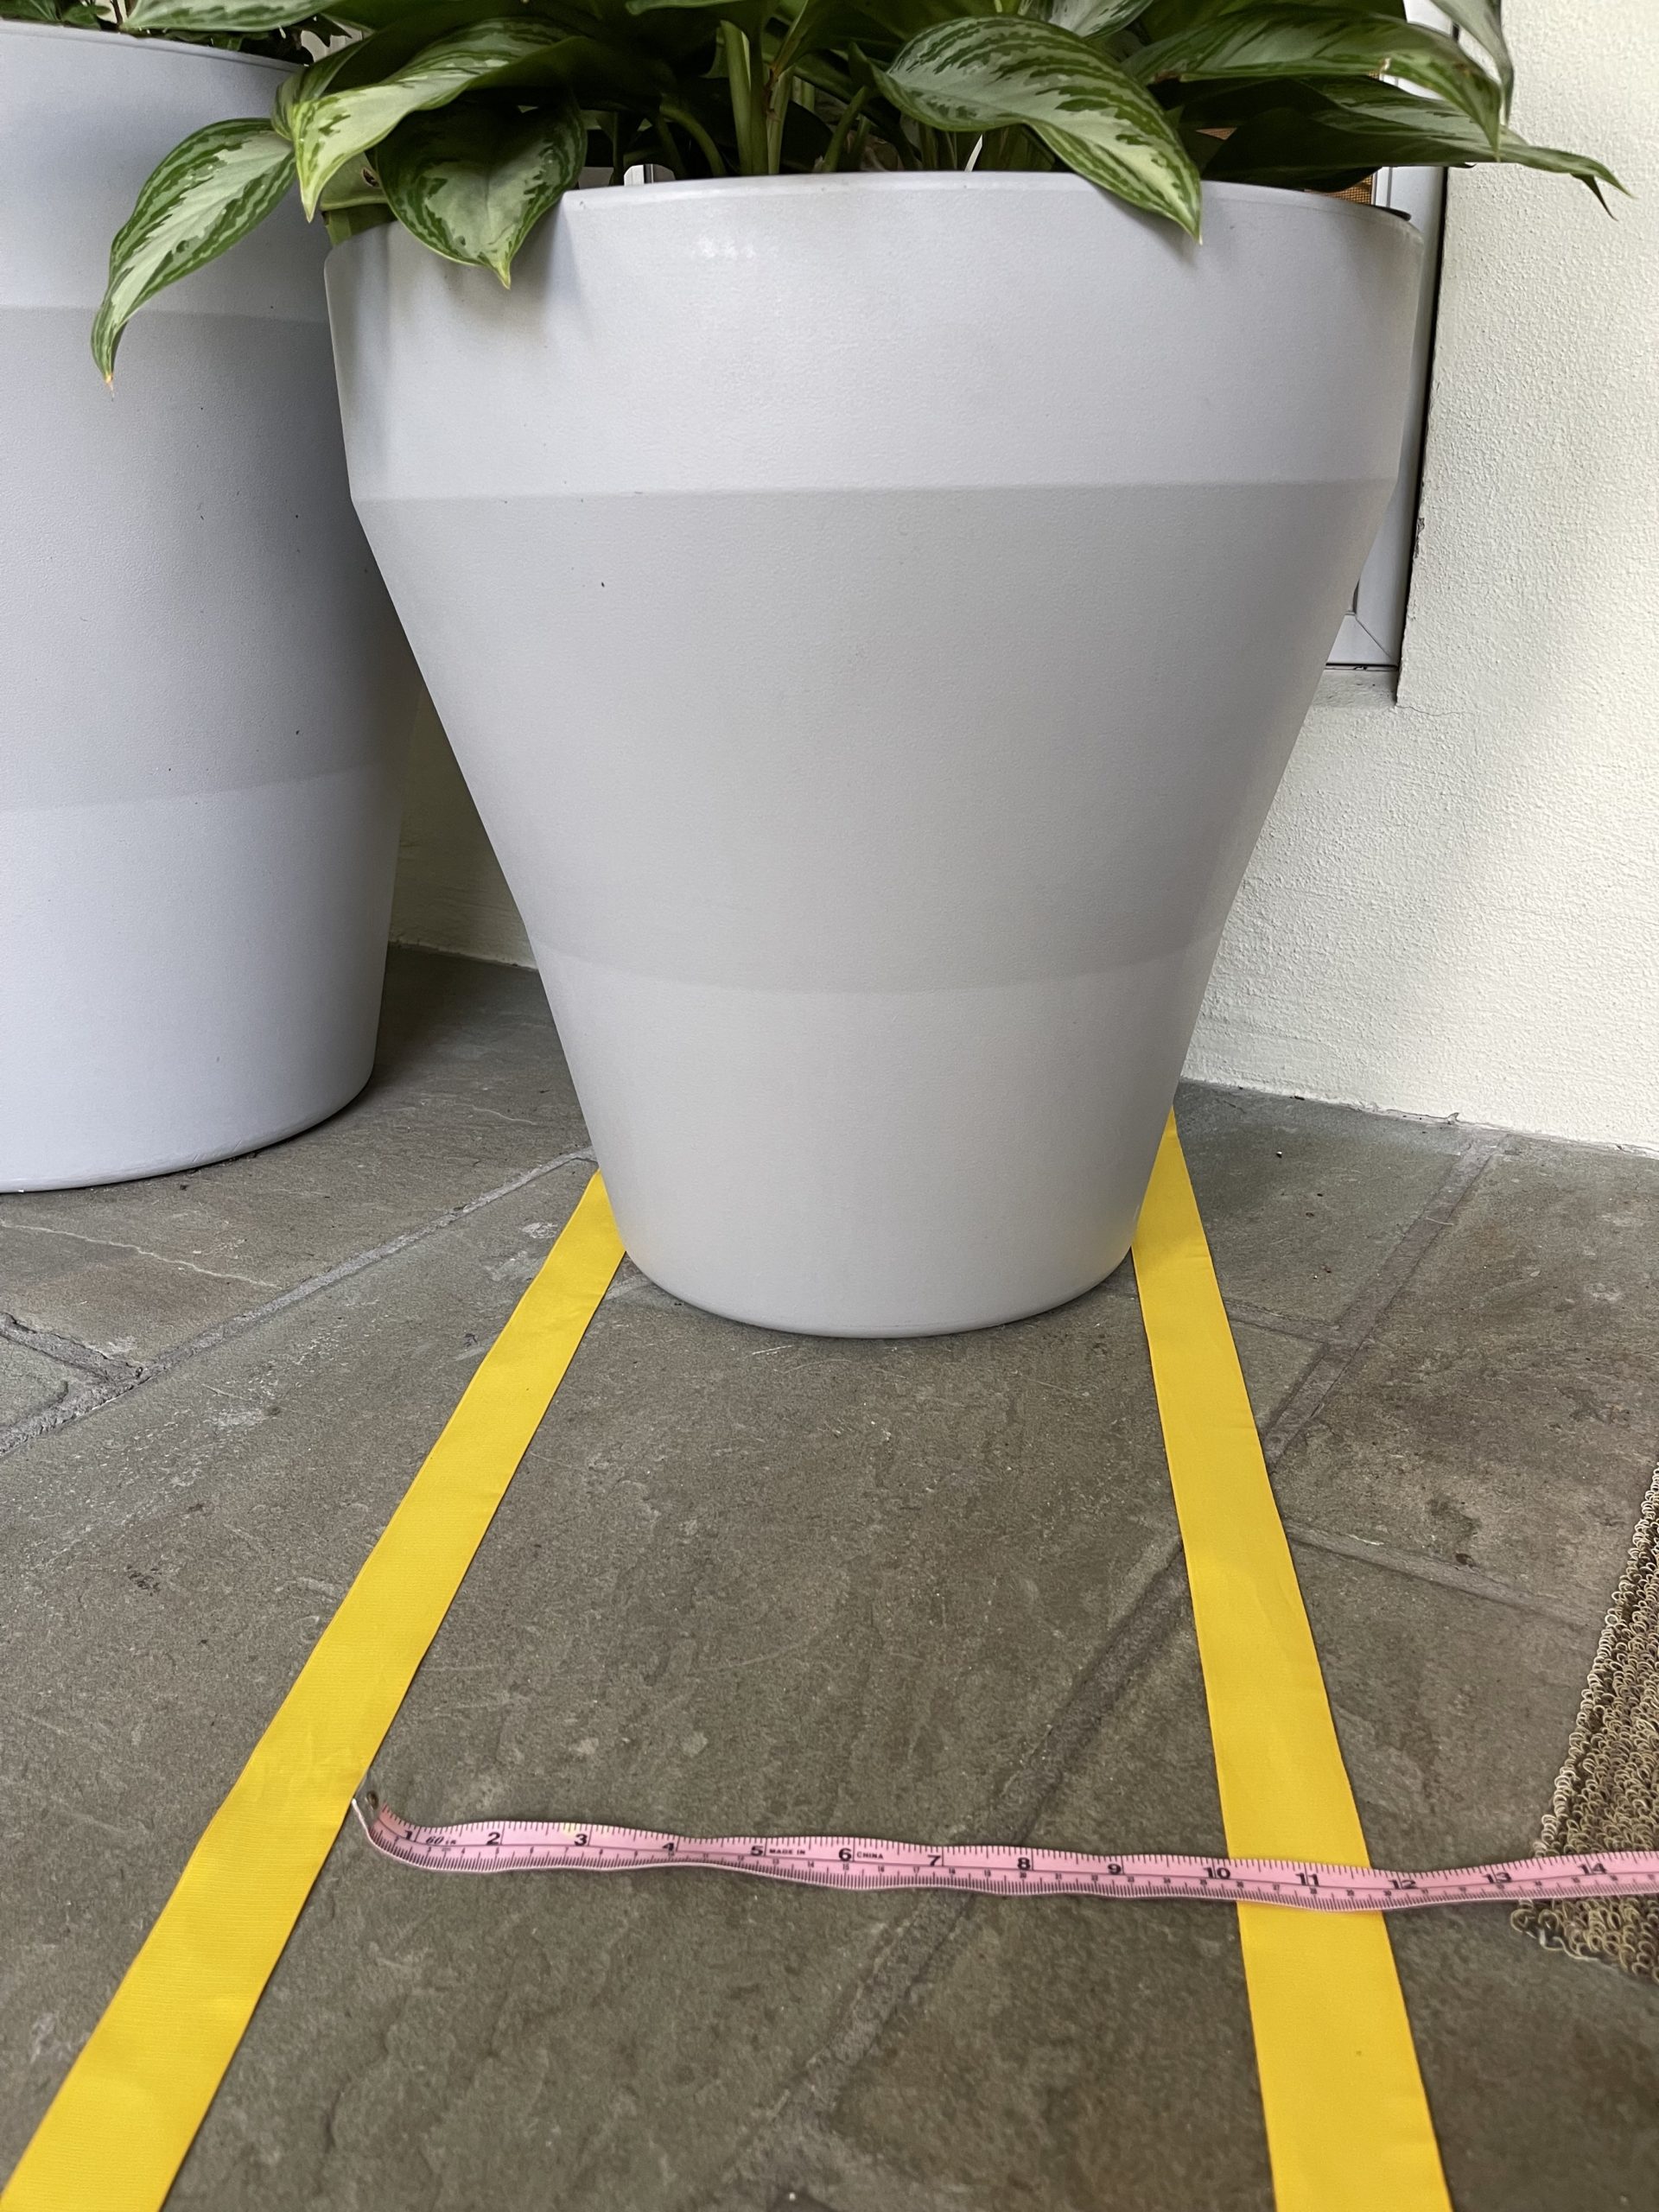 Measuring Bottom Diameter of Planter